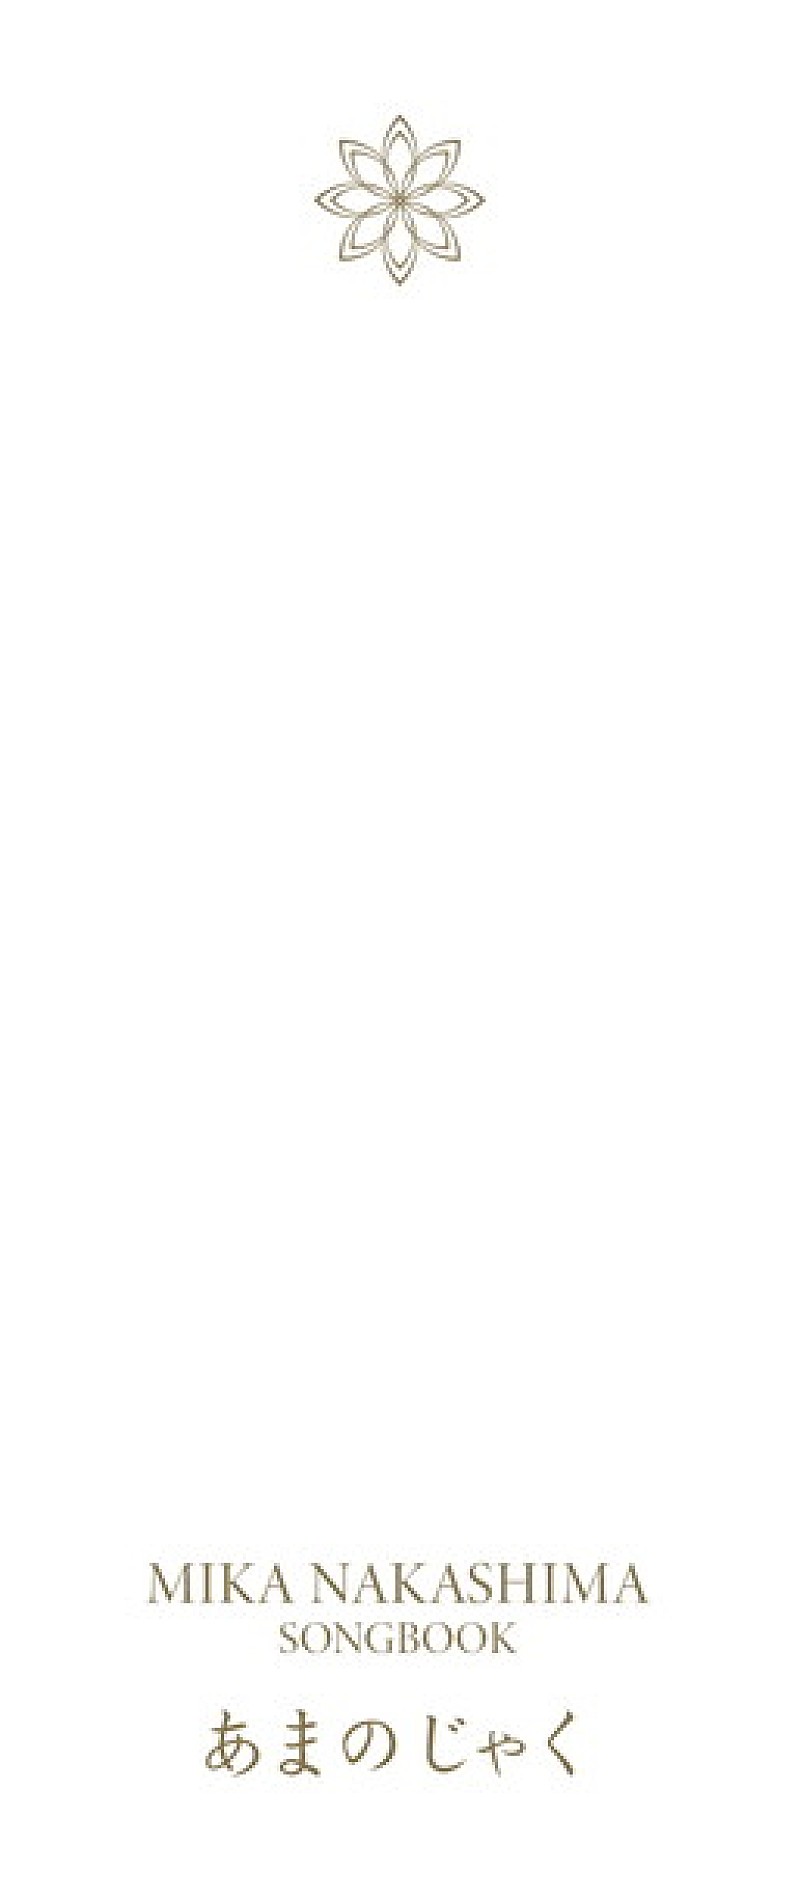 中島美嘉 初のCD付き自叙伝SONGBOOK『あまのじゃく』発売！ 波乱万丈の幼少期～耳の病気の話まで赤裸々に | Daily News |  Billboard JAPAN